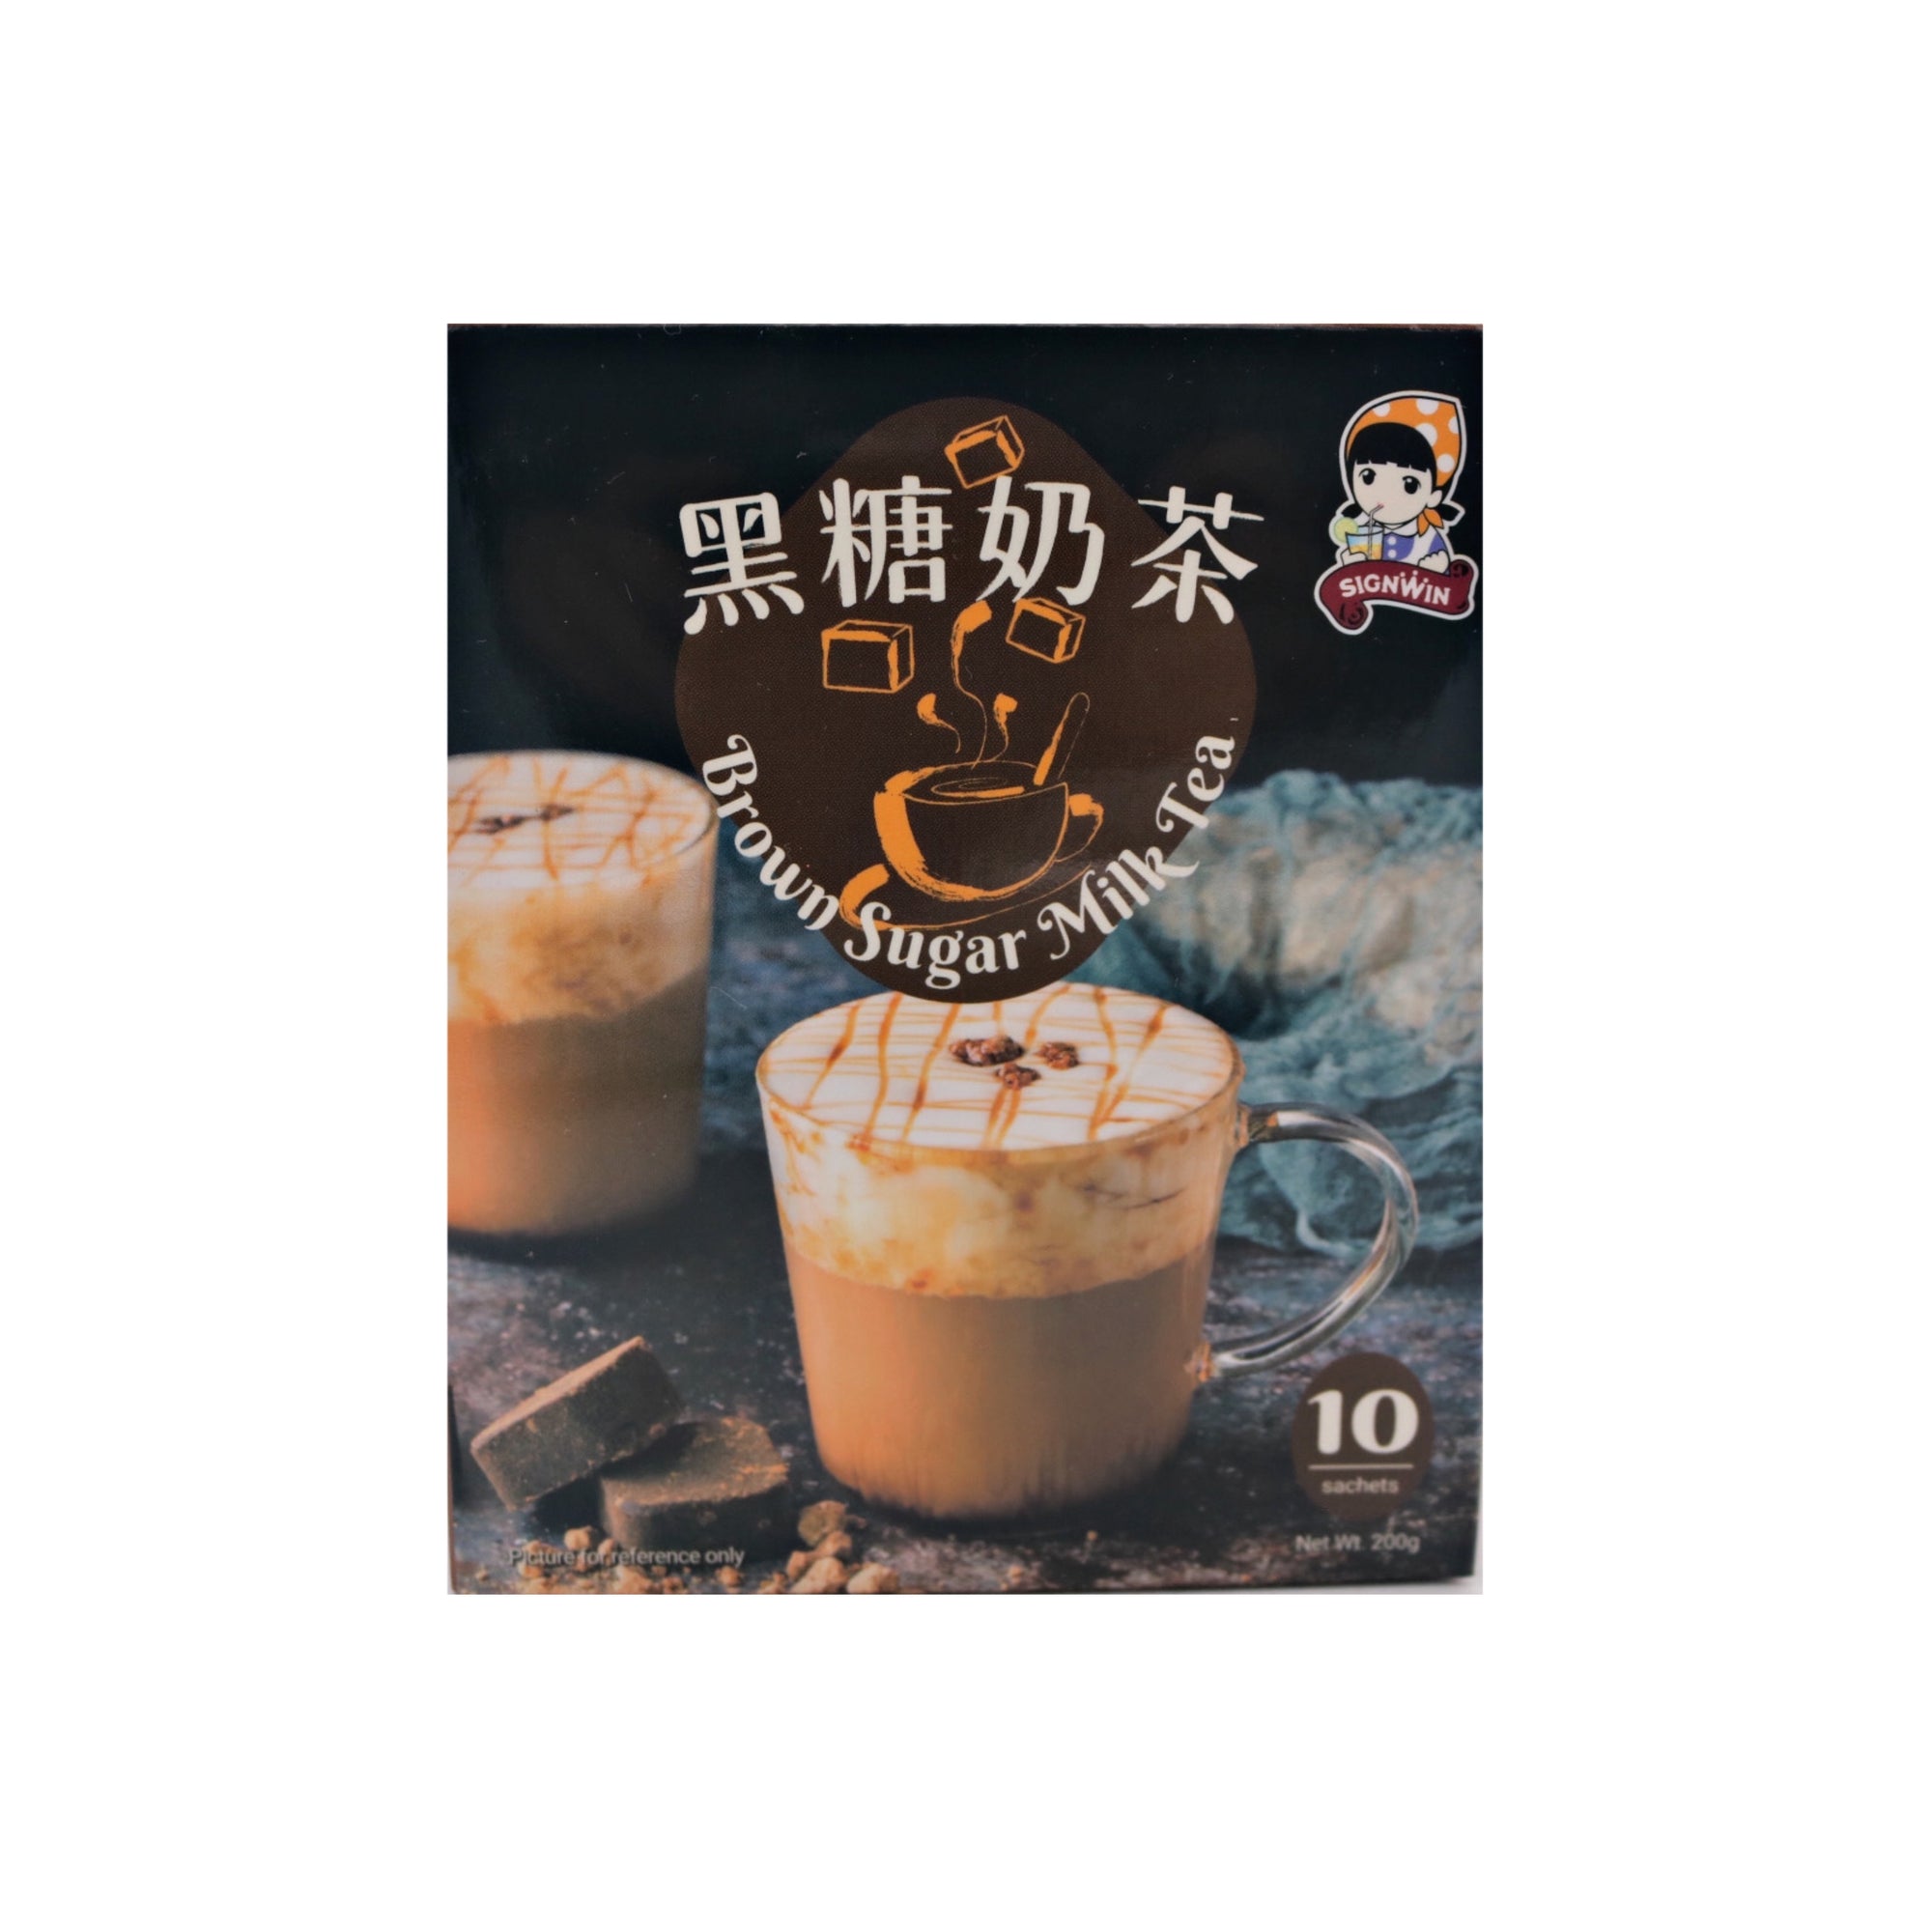 Signwin Brown Sugar Milk Tea Powder 三得冠黑糖奶茶 (20g*10bags) 200g - Tuk Tuk Mart